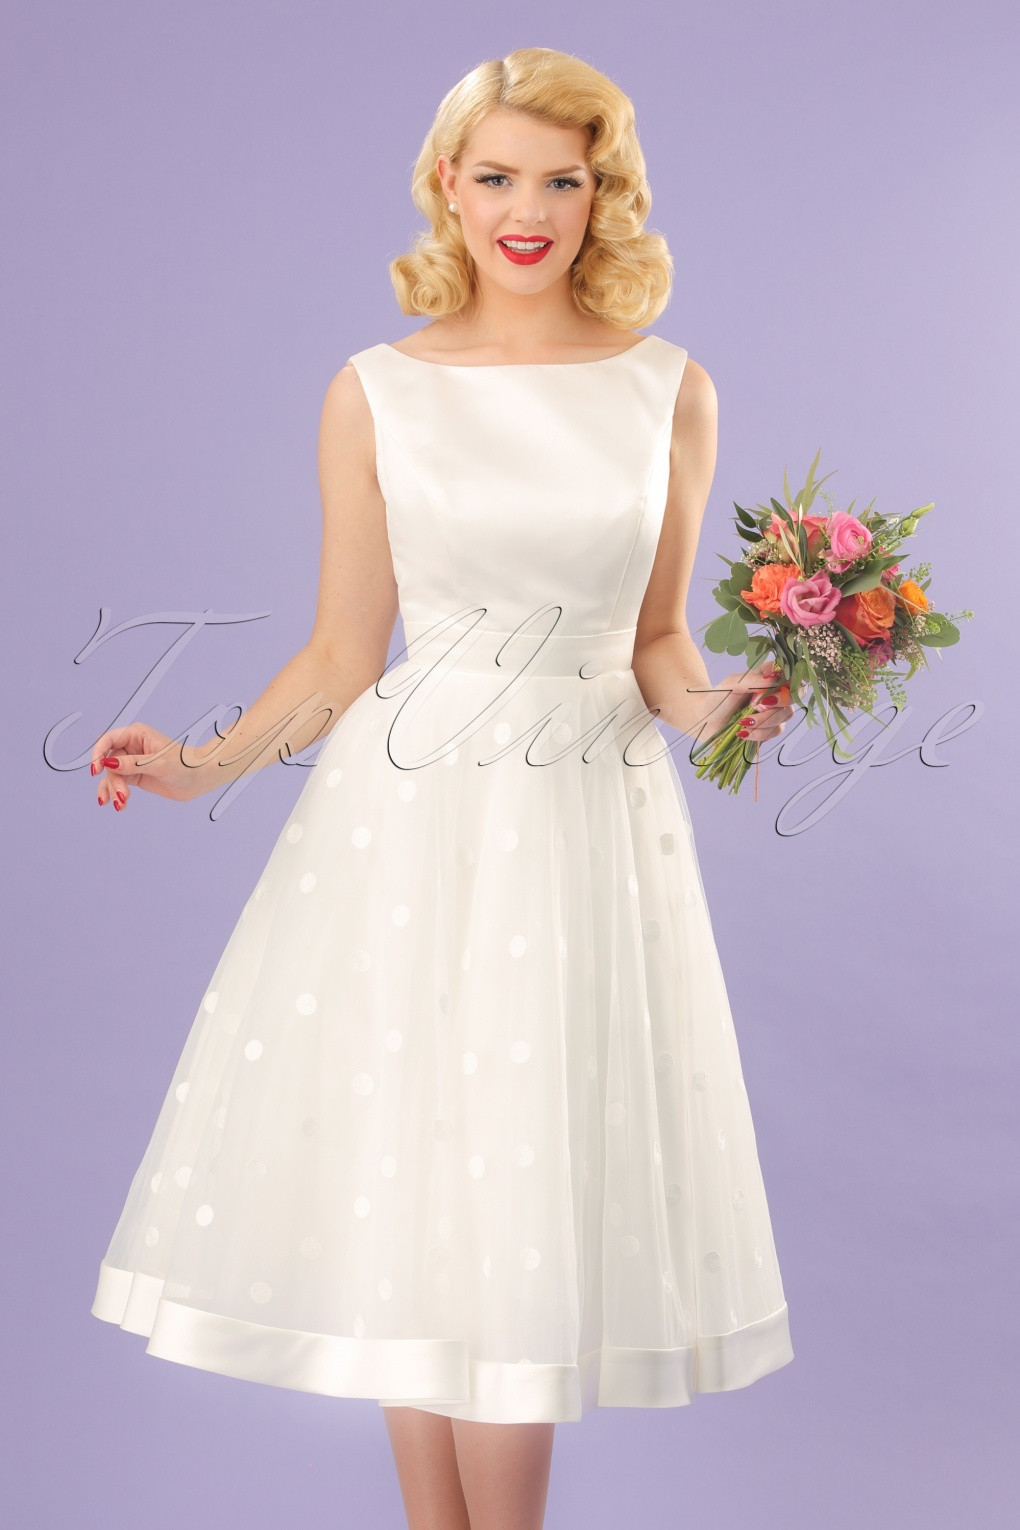 Rockabilly Wedding Dress
 50s Wedding Dress 1950s Style Wedding Dresses Rockabilly